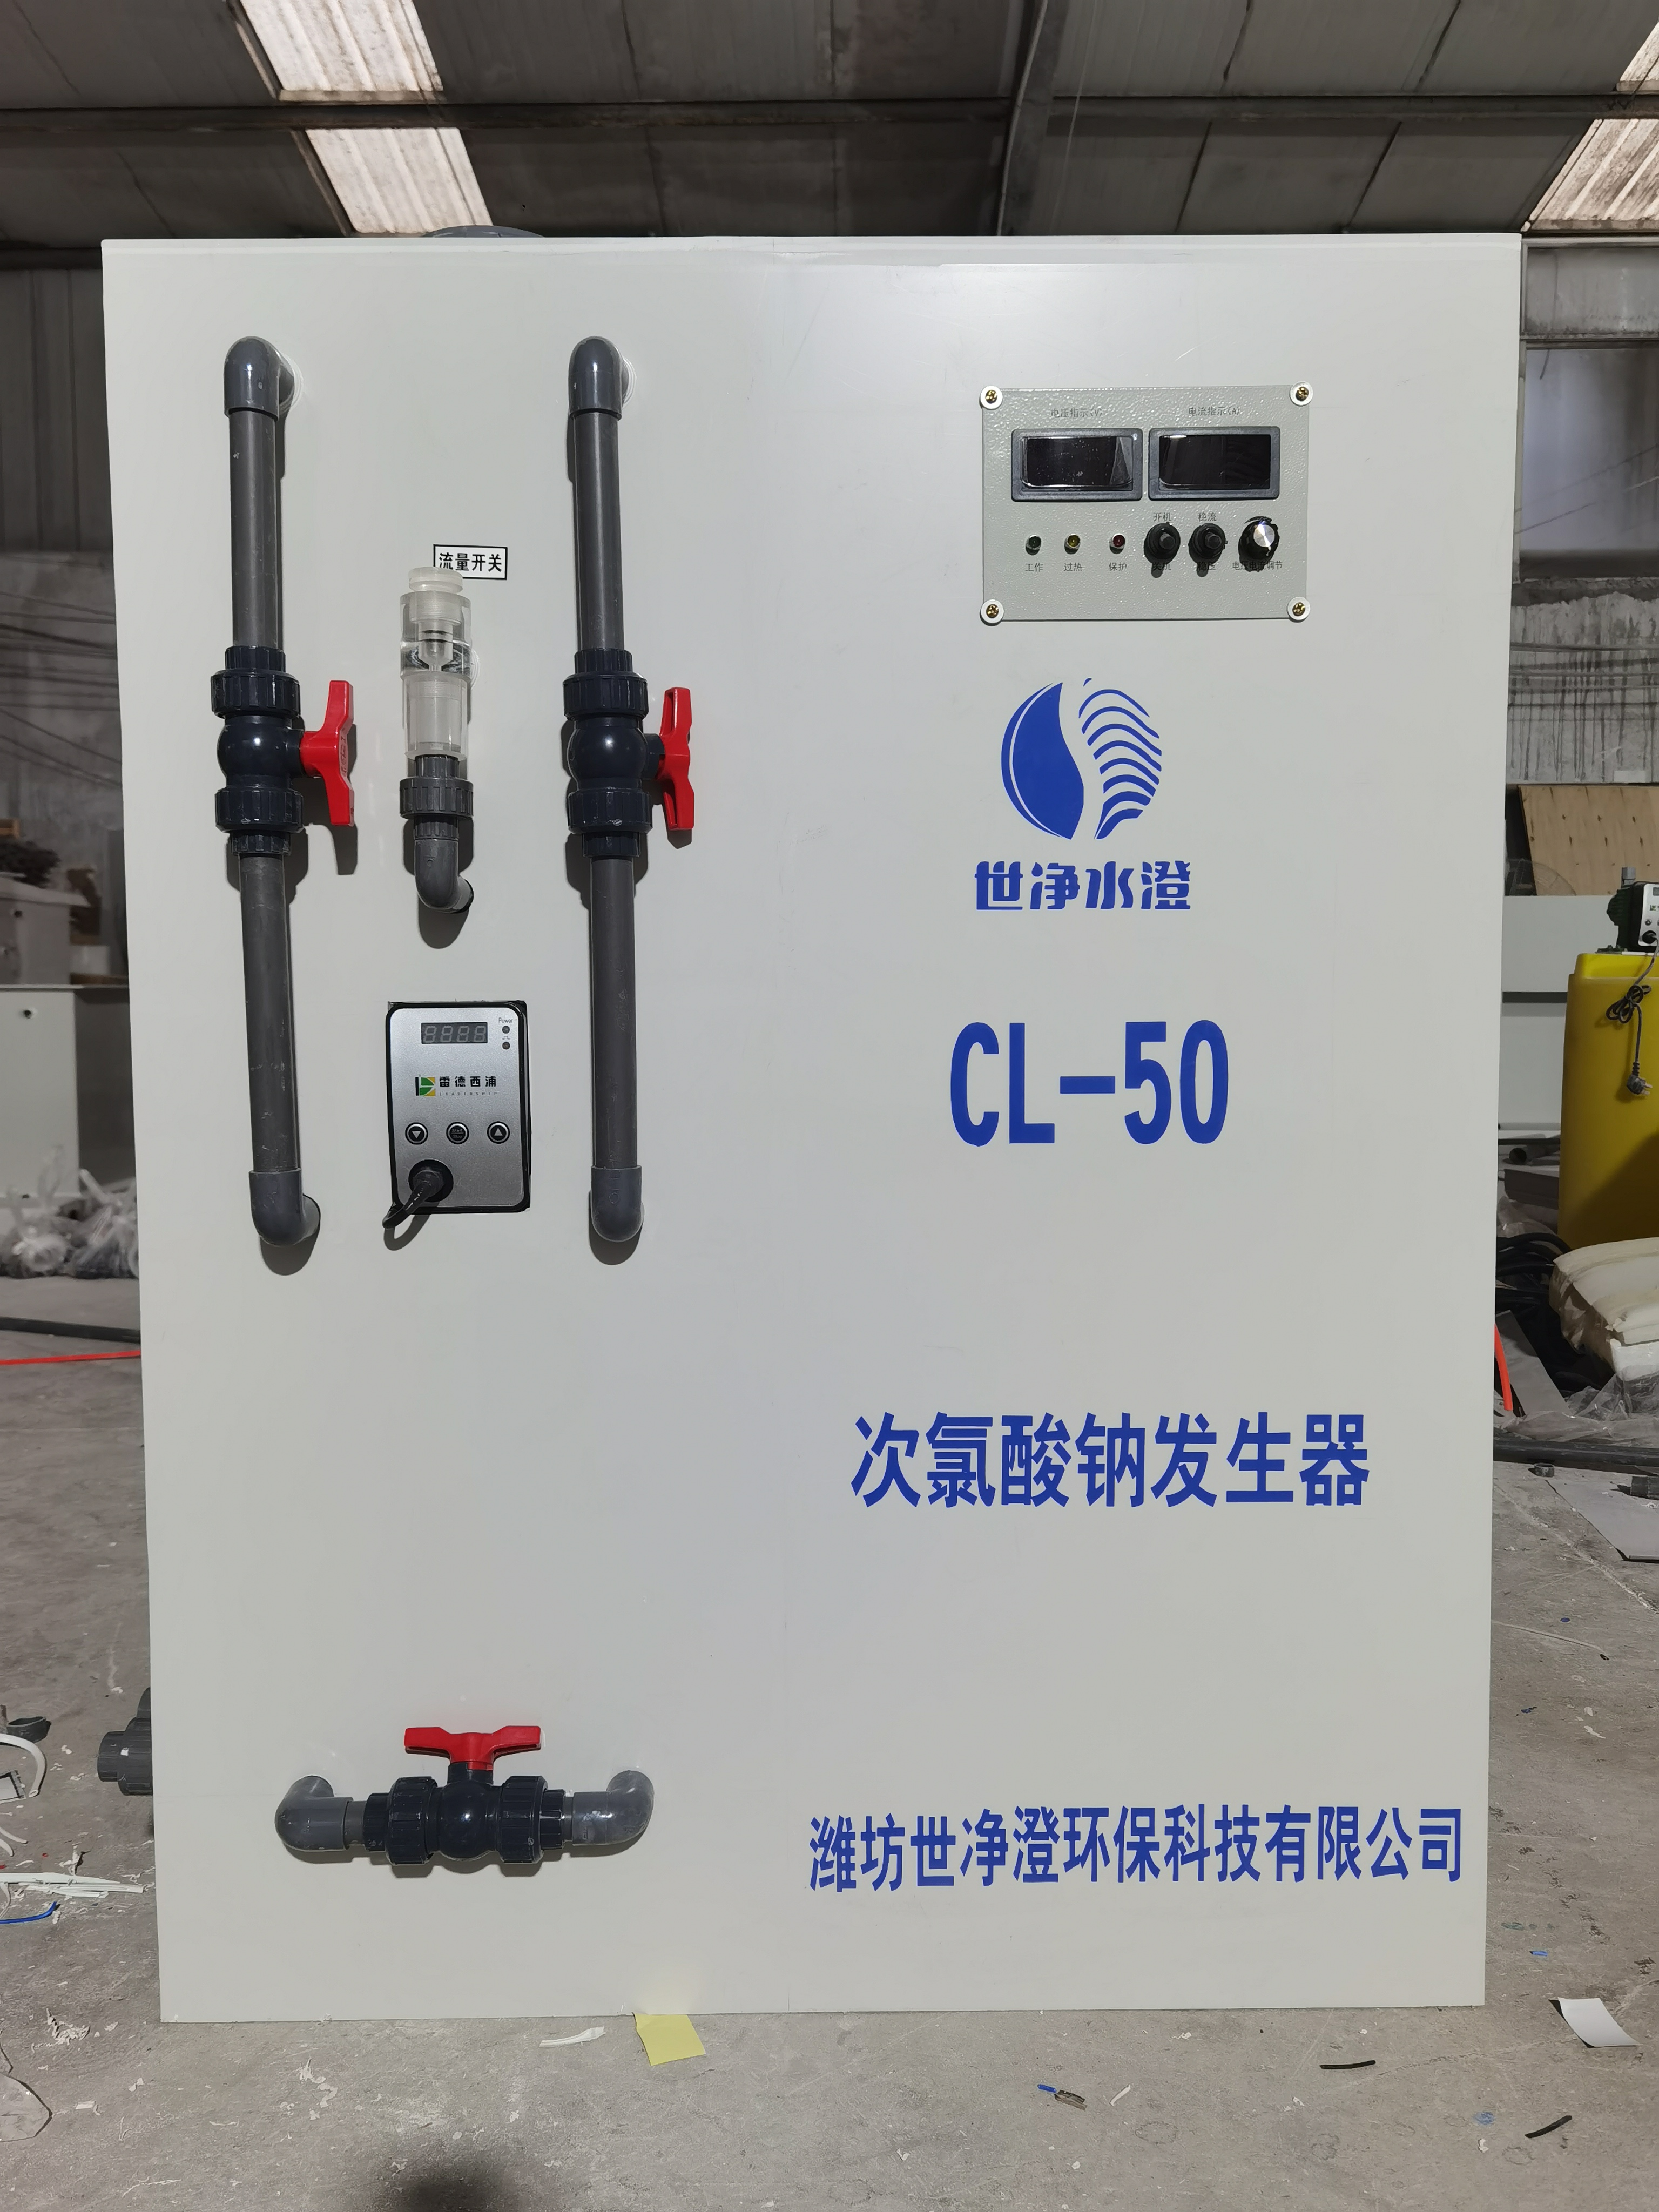 贵州次lv酸钠发生器安全使用 材质坚固